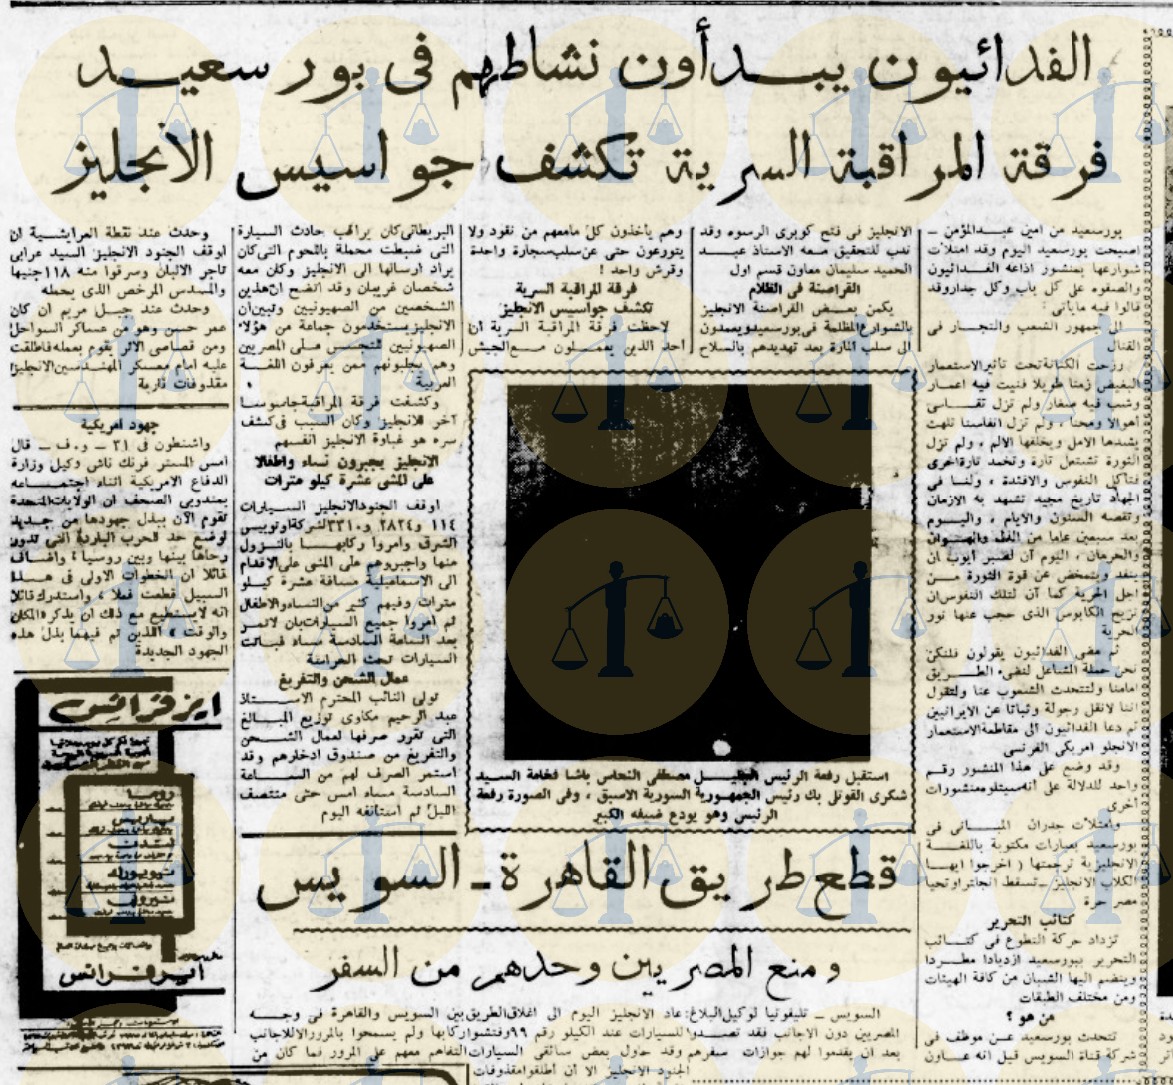  يوم 31 أكتوبر 1951 - العمل الفدائي في بورسعيد